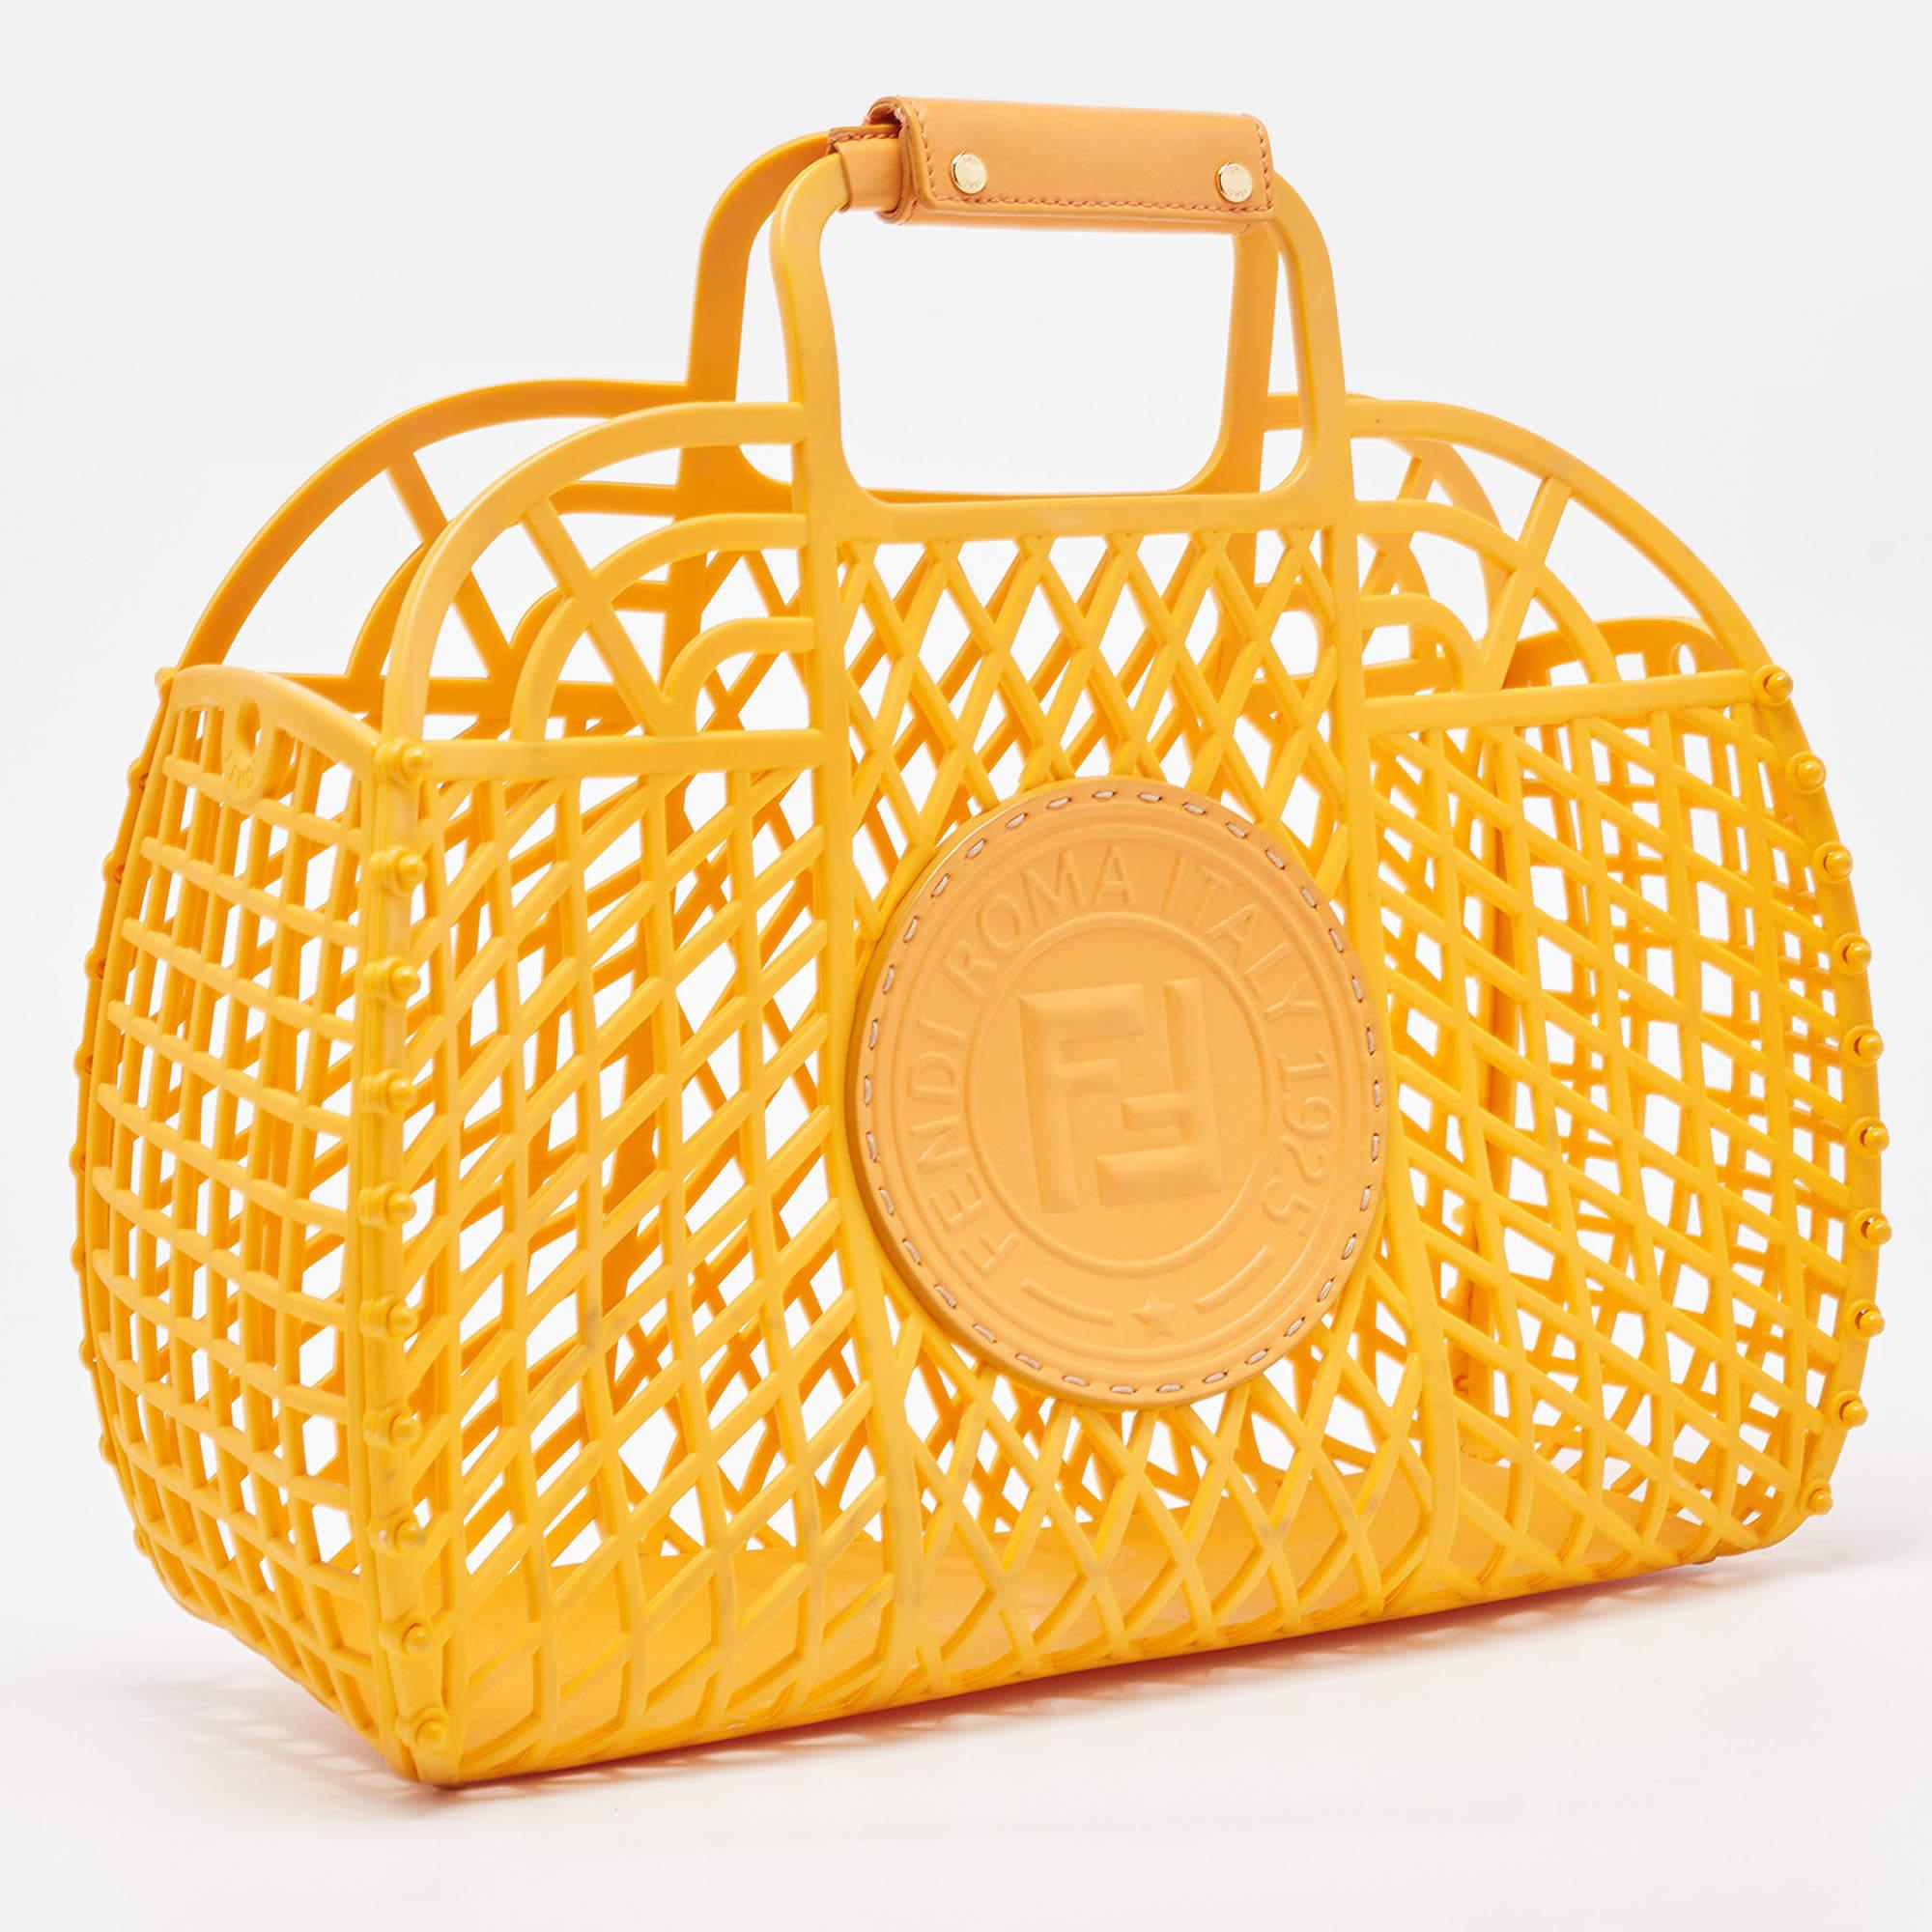 Fendi Orange Plastic Medium Basket Tote In Good Condition For Sale In Dubai, Al Qouz 2